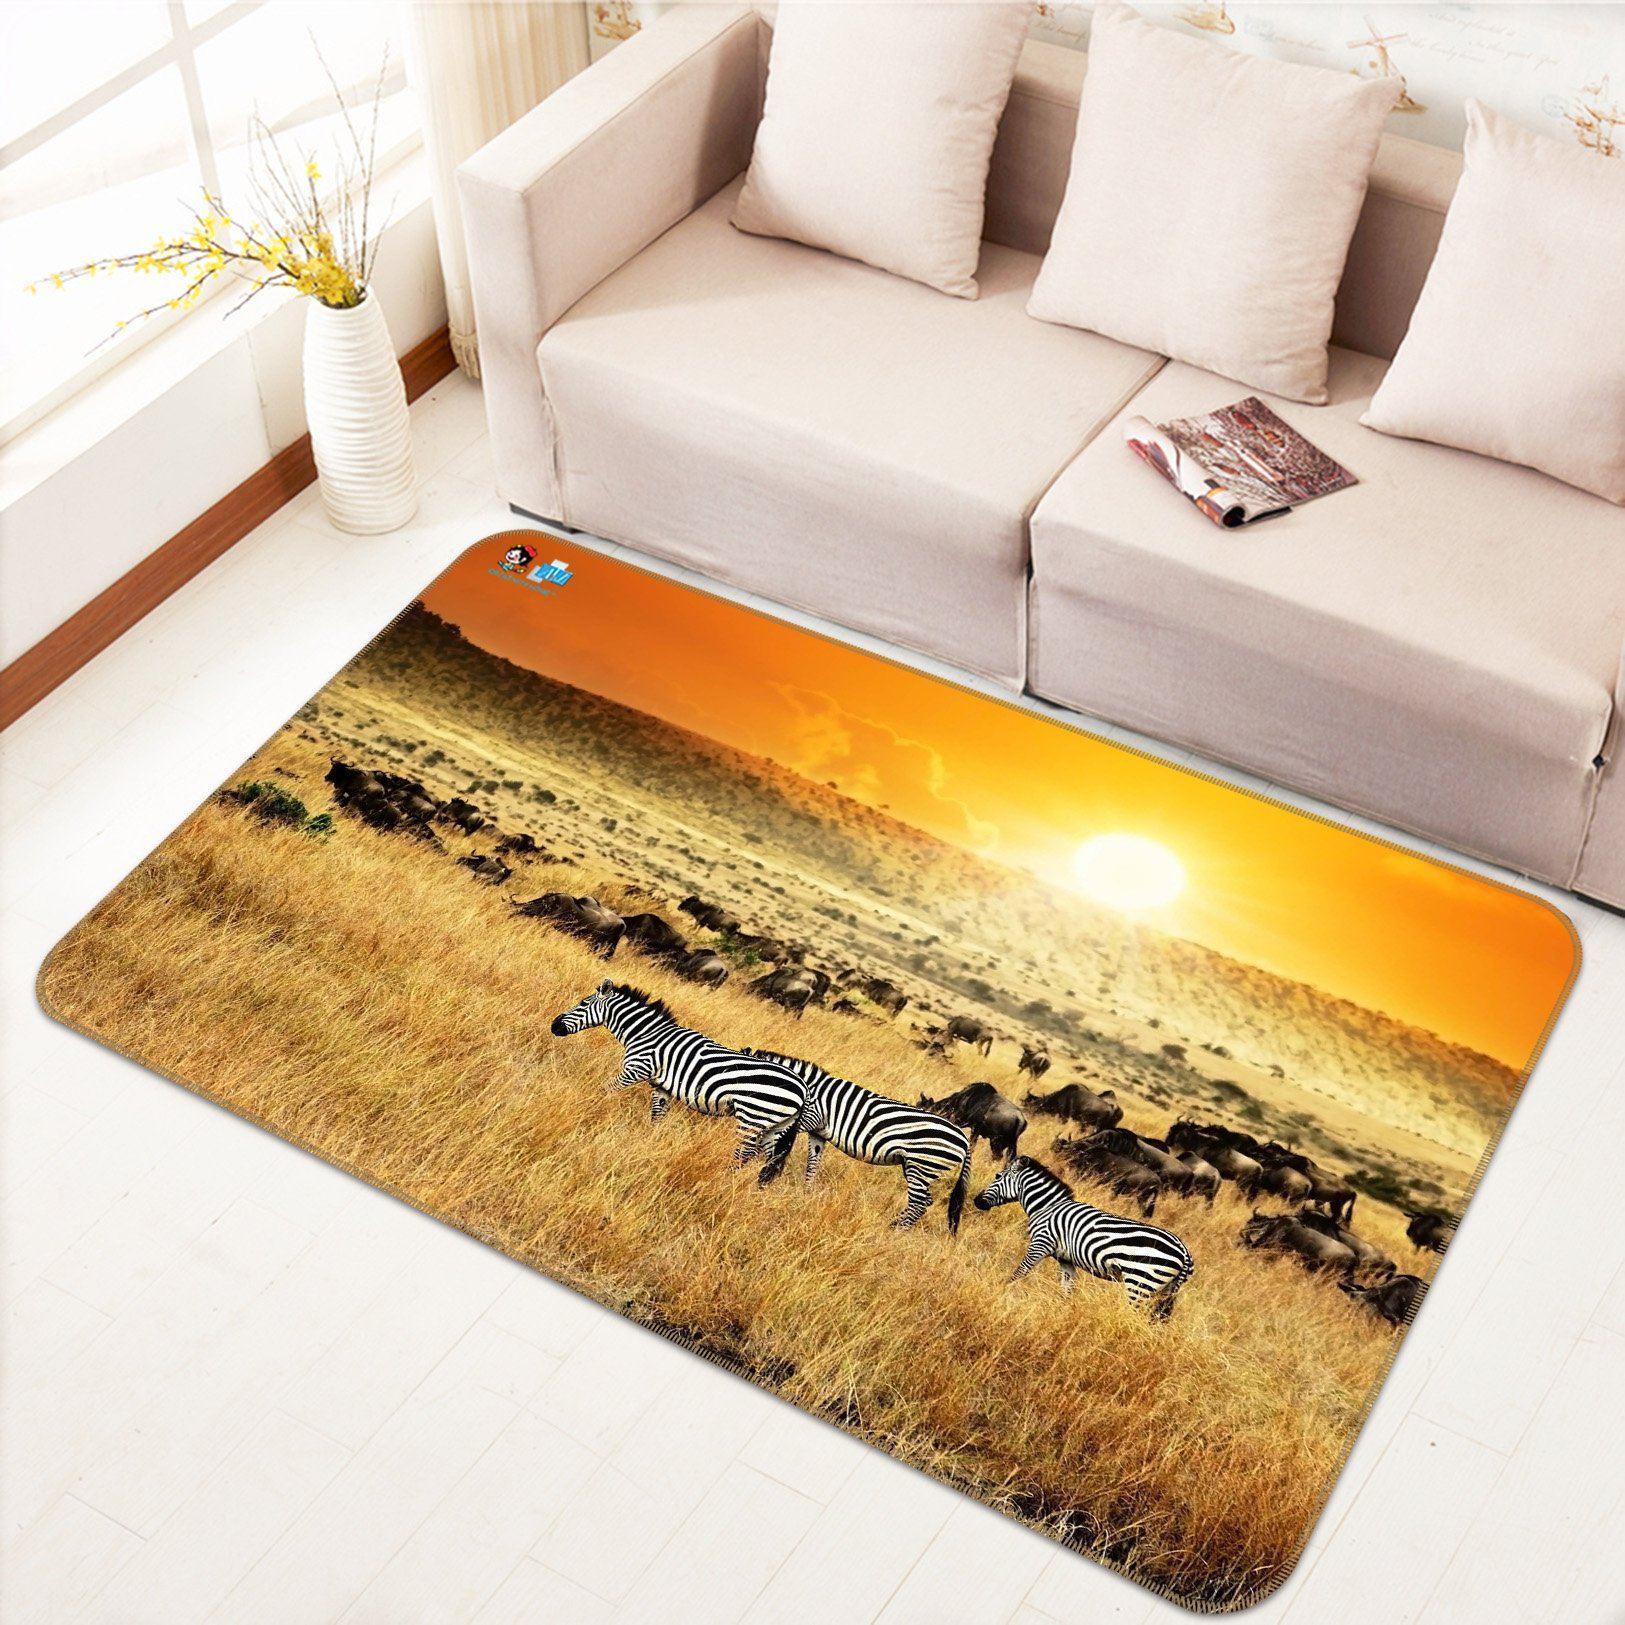 3D Home Carpet Sunset Zebra 399 Non Slip Rug Mat, 160cmx240cm (63"x94.5")